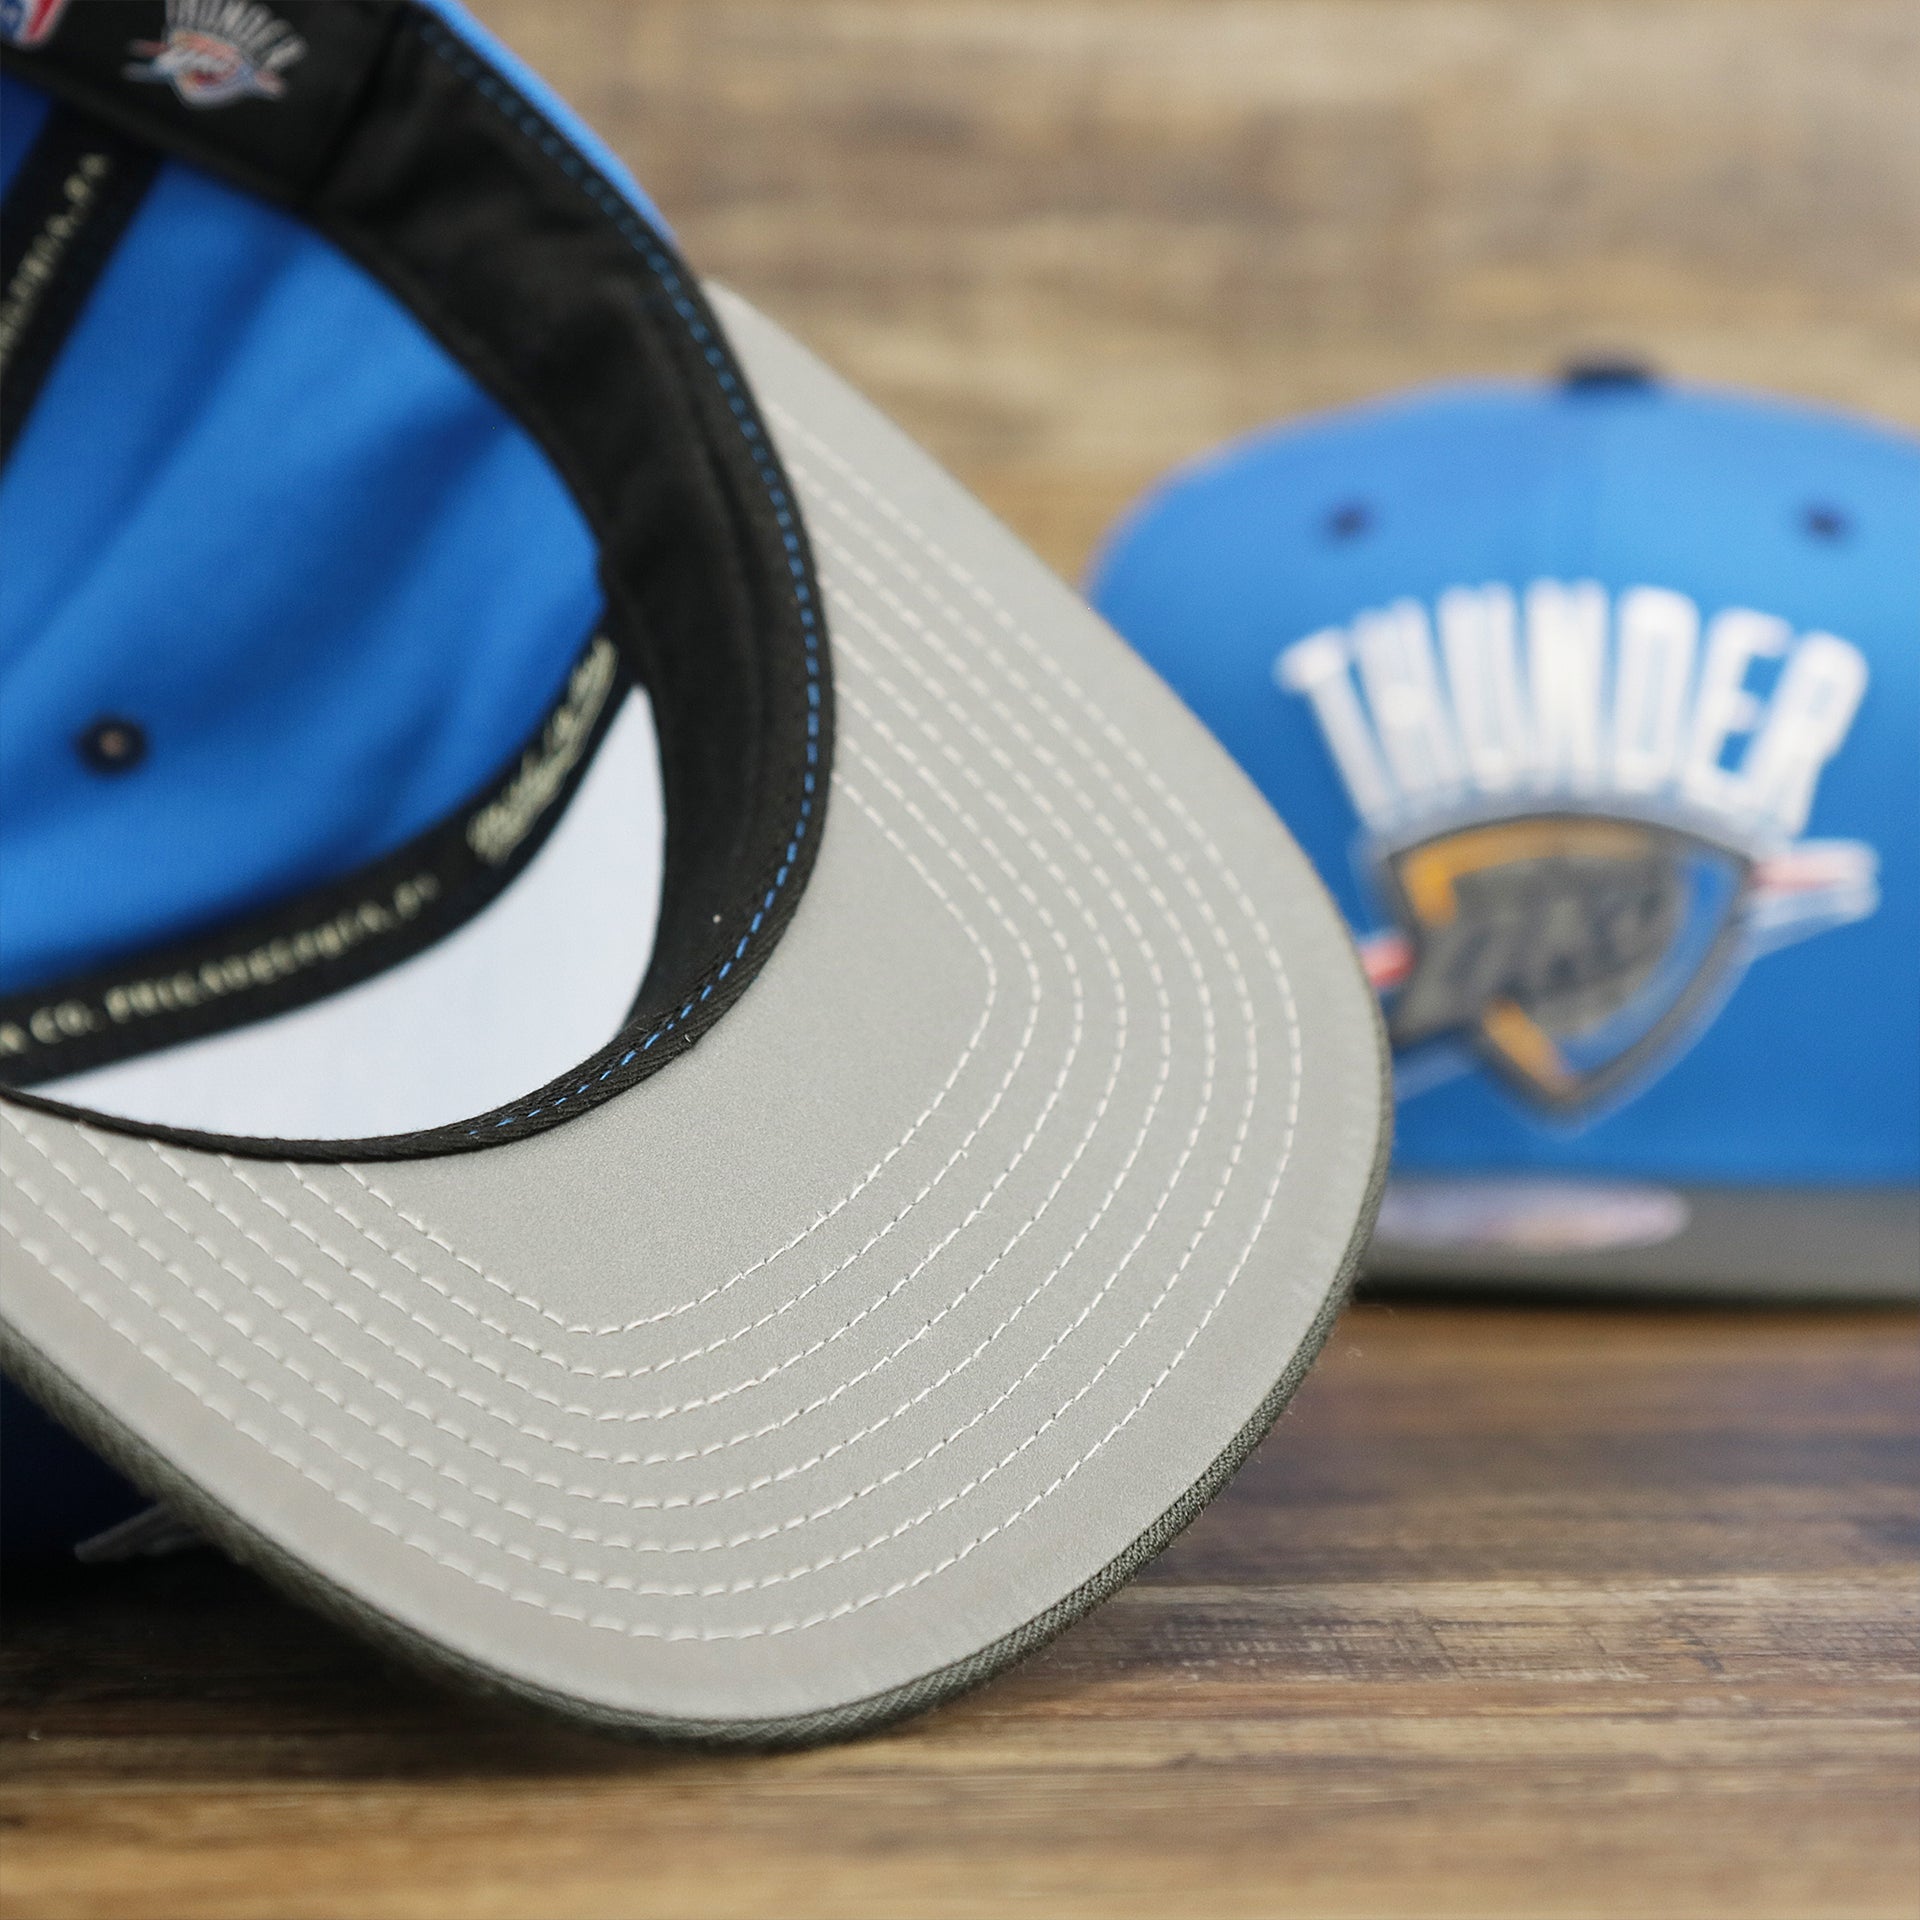 The Reflective Undervisor on the Thunder Snapback Hat | Oklahoma City Thunder Reflective 2-Tone Snap Cap